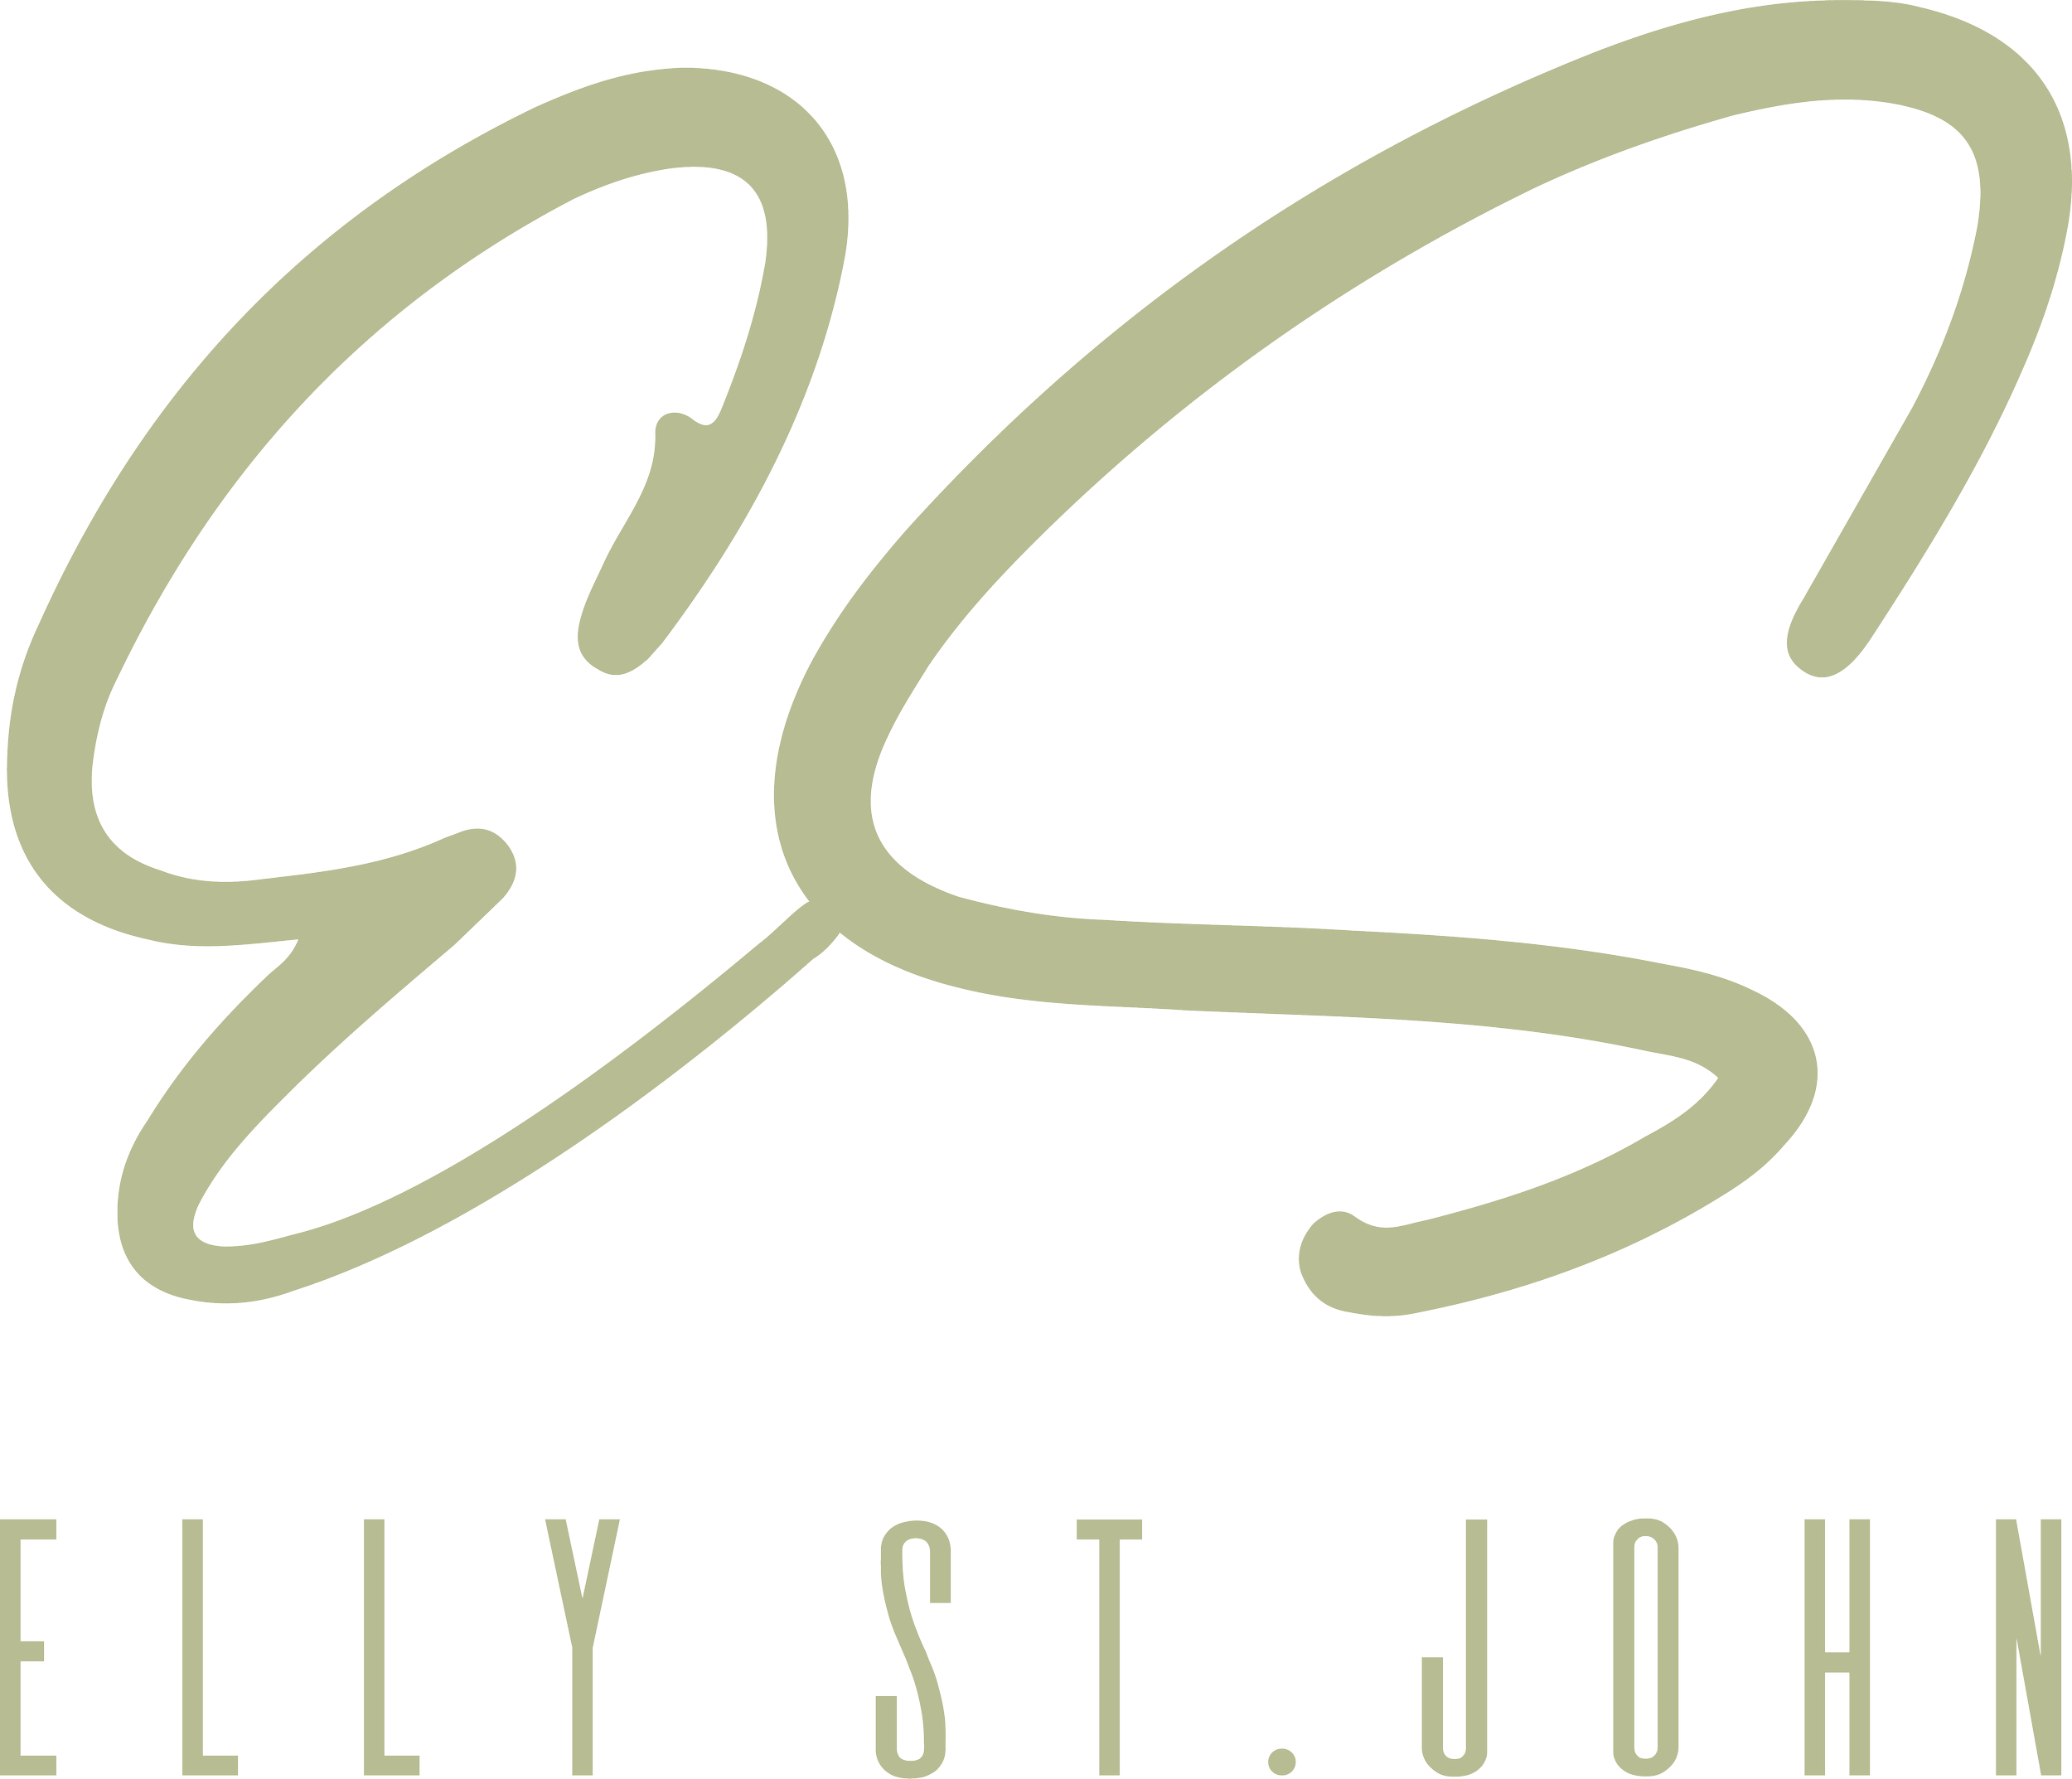 Elly St.John